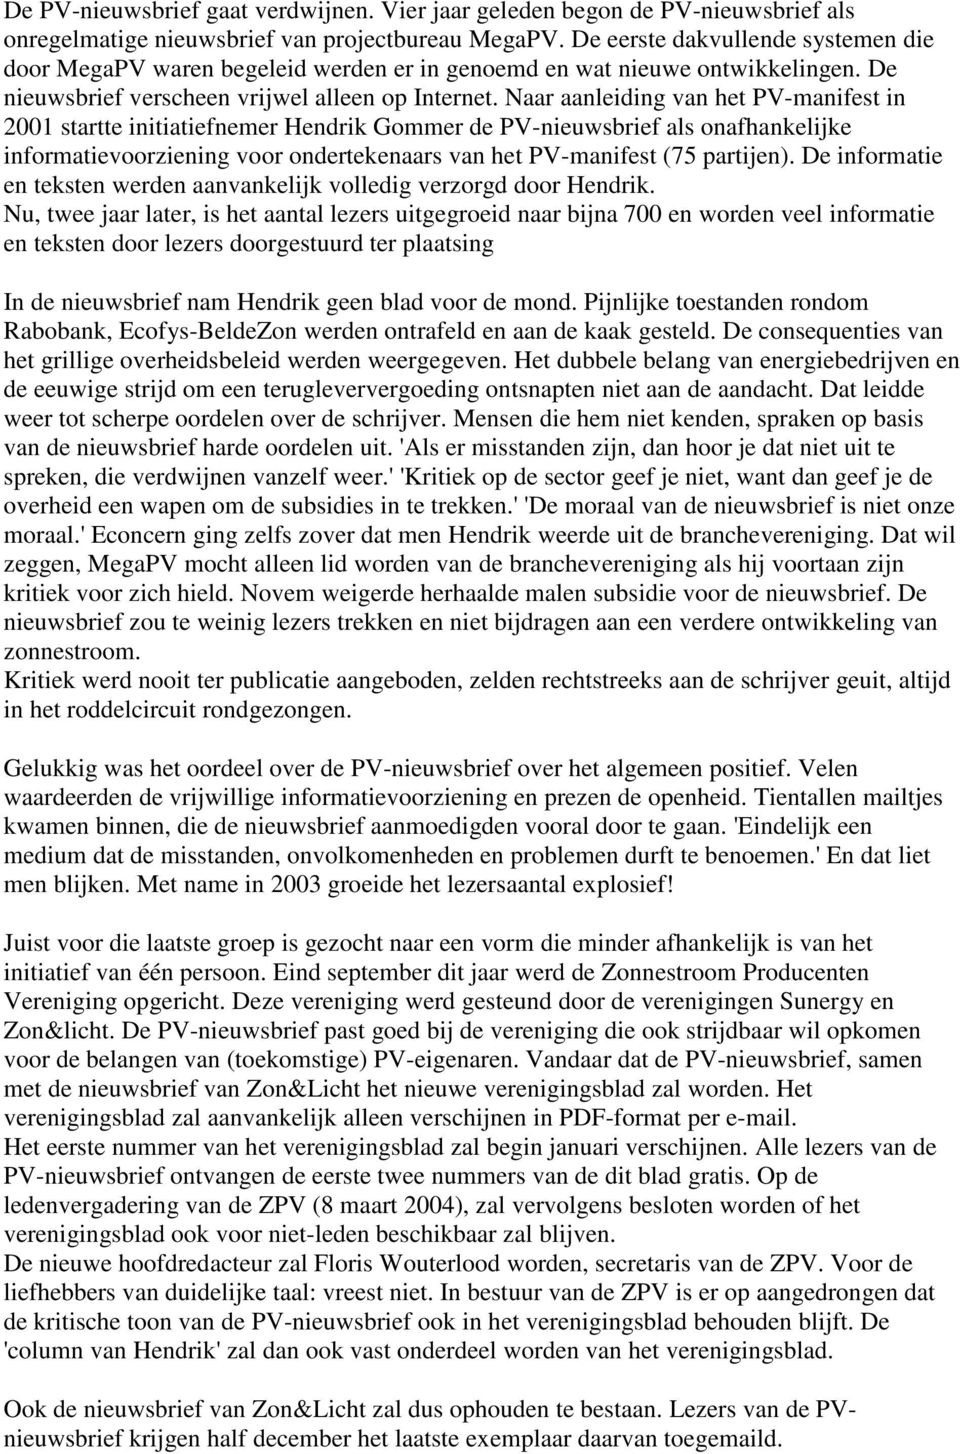 Naar aanleiding van het PV-manifest in 2001 startte initiatiefnemer Hendrik Gommer de PV-nieuwsbrief als onafhankelijke informatievoorziening voor ondertekenaars van het PV-manifest (75 partijen).